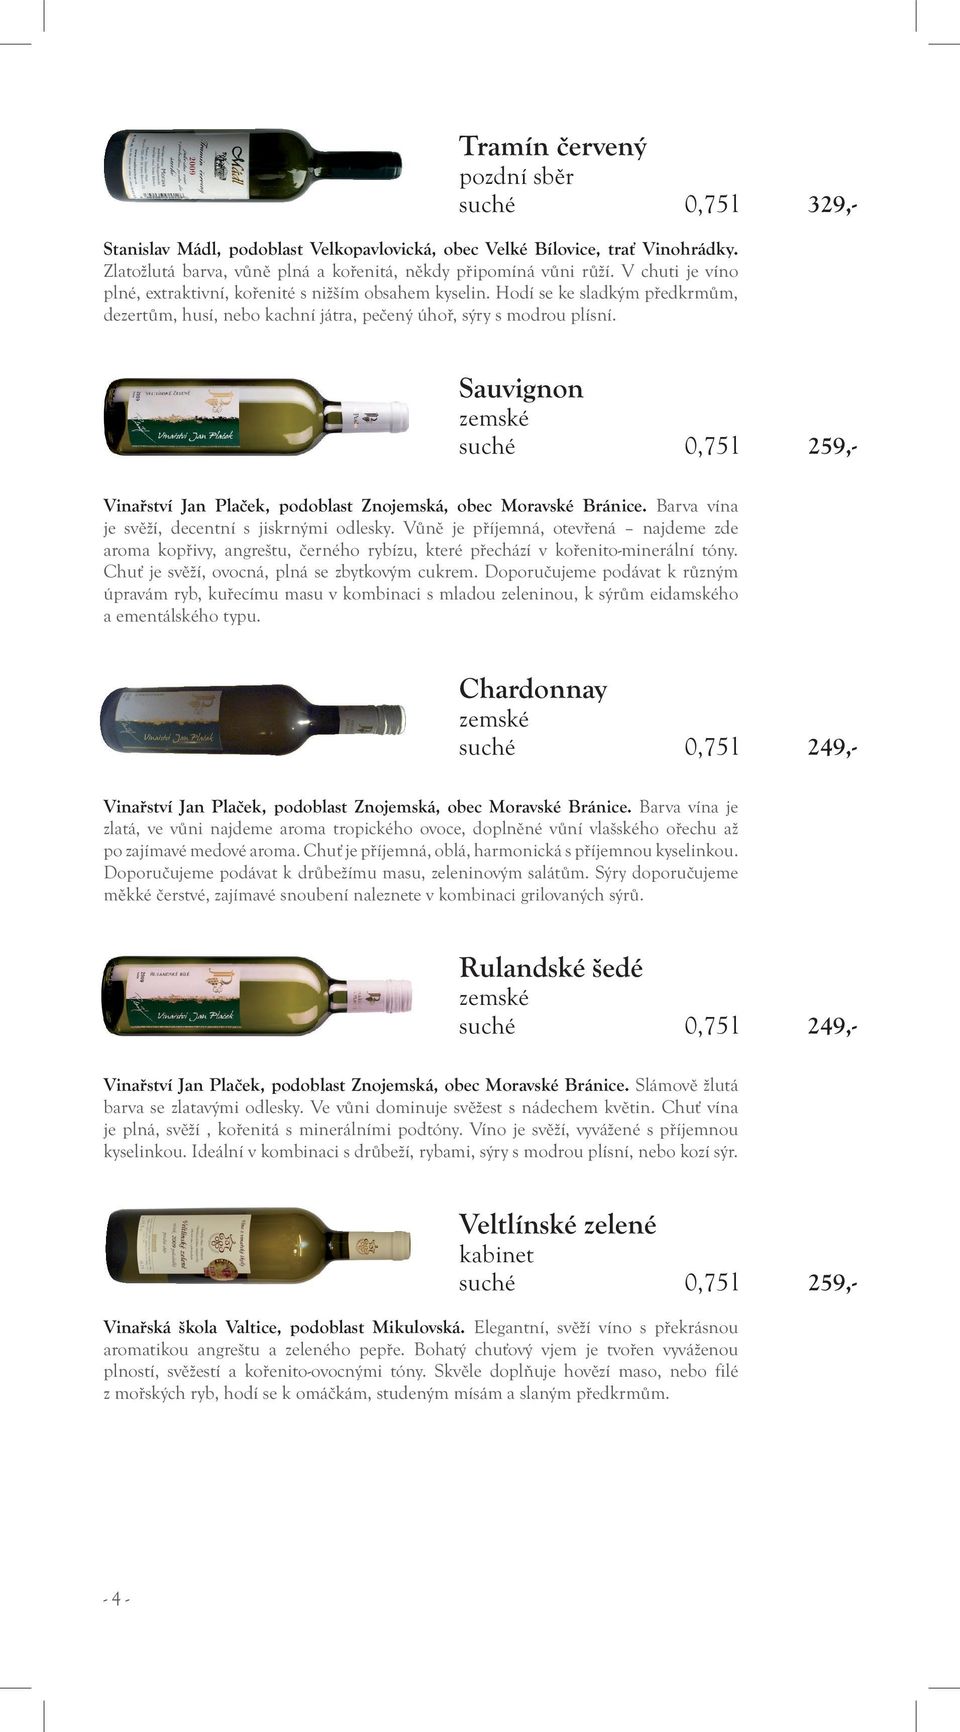 Sauvignon suché 0,75 l 259,- Vinařství Jan Plaček, podoblast Znojemská, obec Moravské Bránice. Barva vína je svěží, decentní s jiskrnými odlesky.